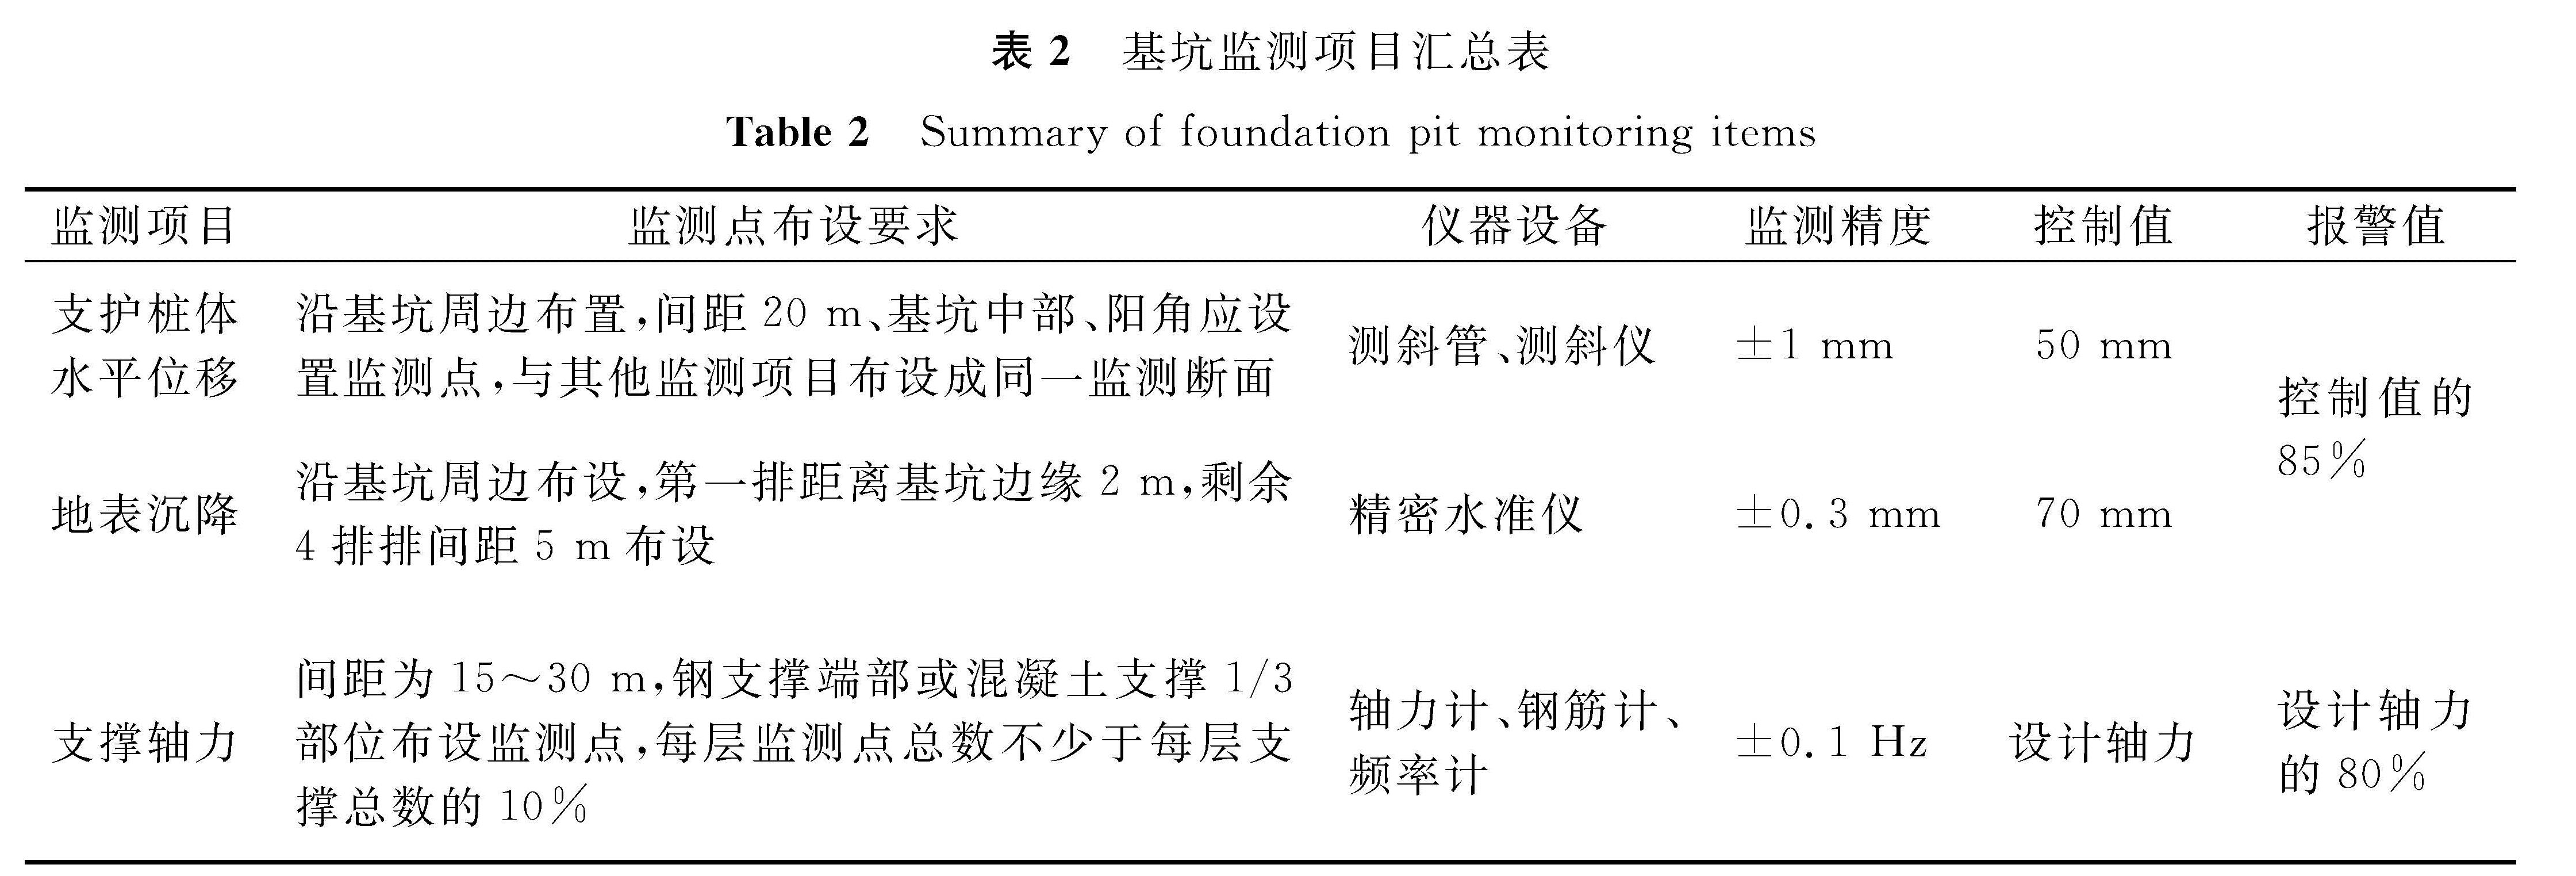 表2 基坑监测项目汇总表<br/>Table 2 Summary of foundation pit monitoring items